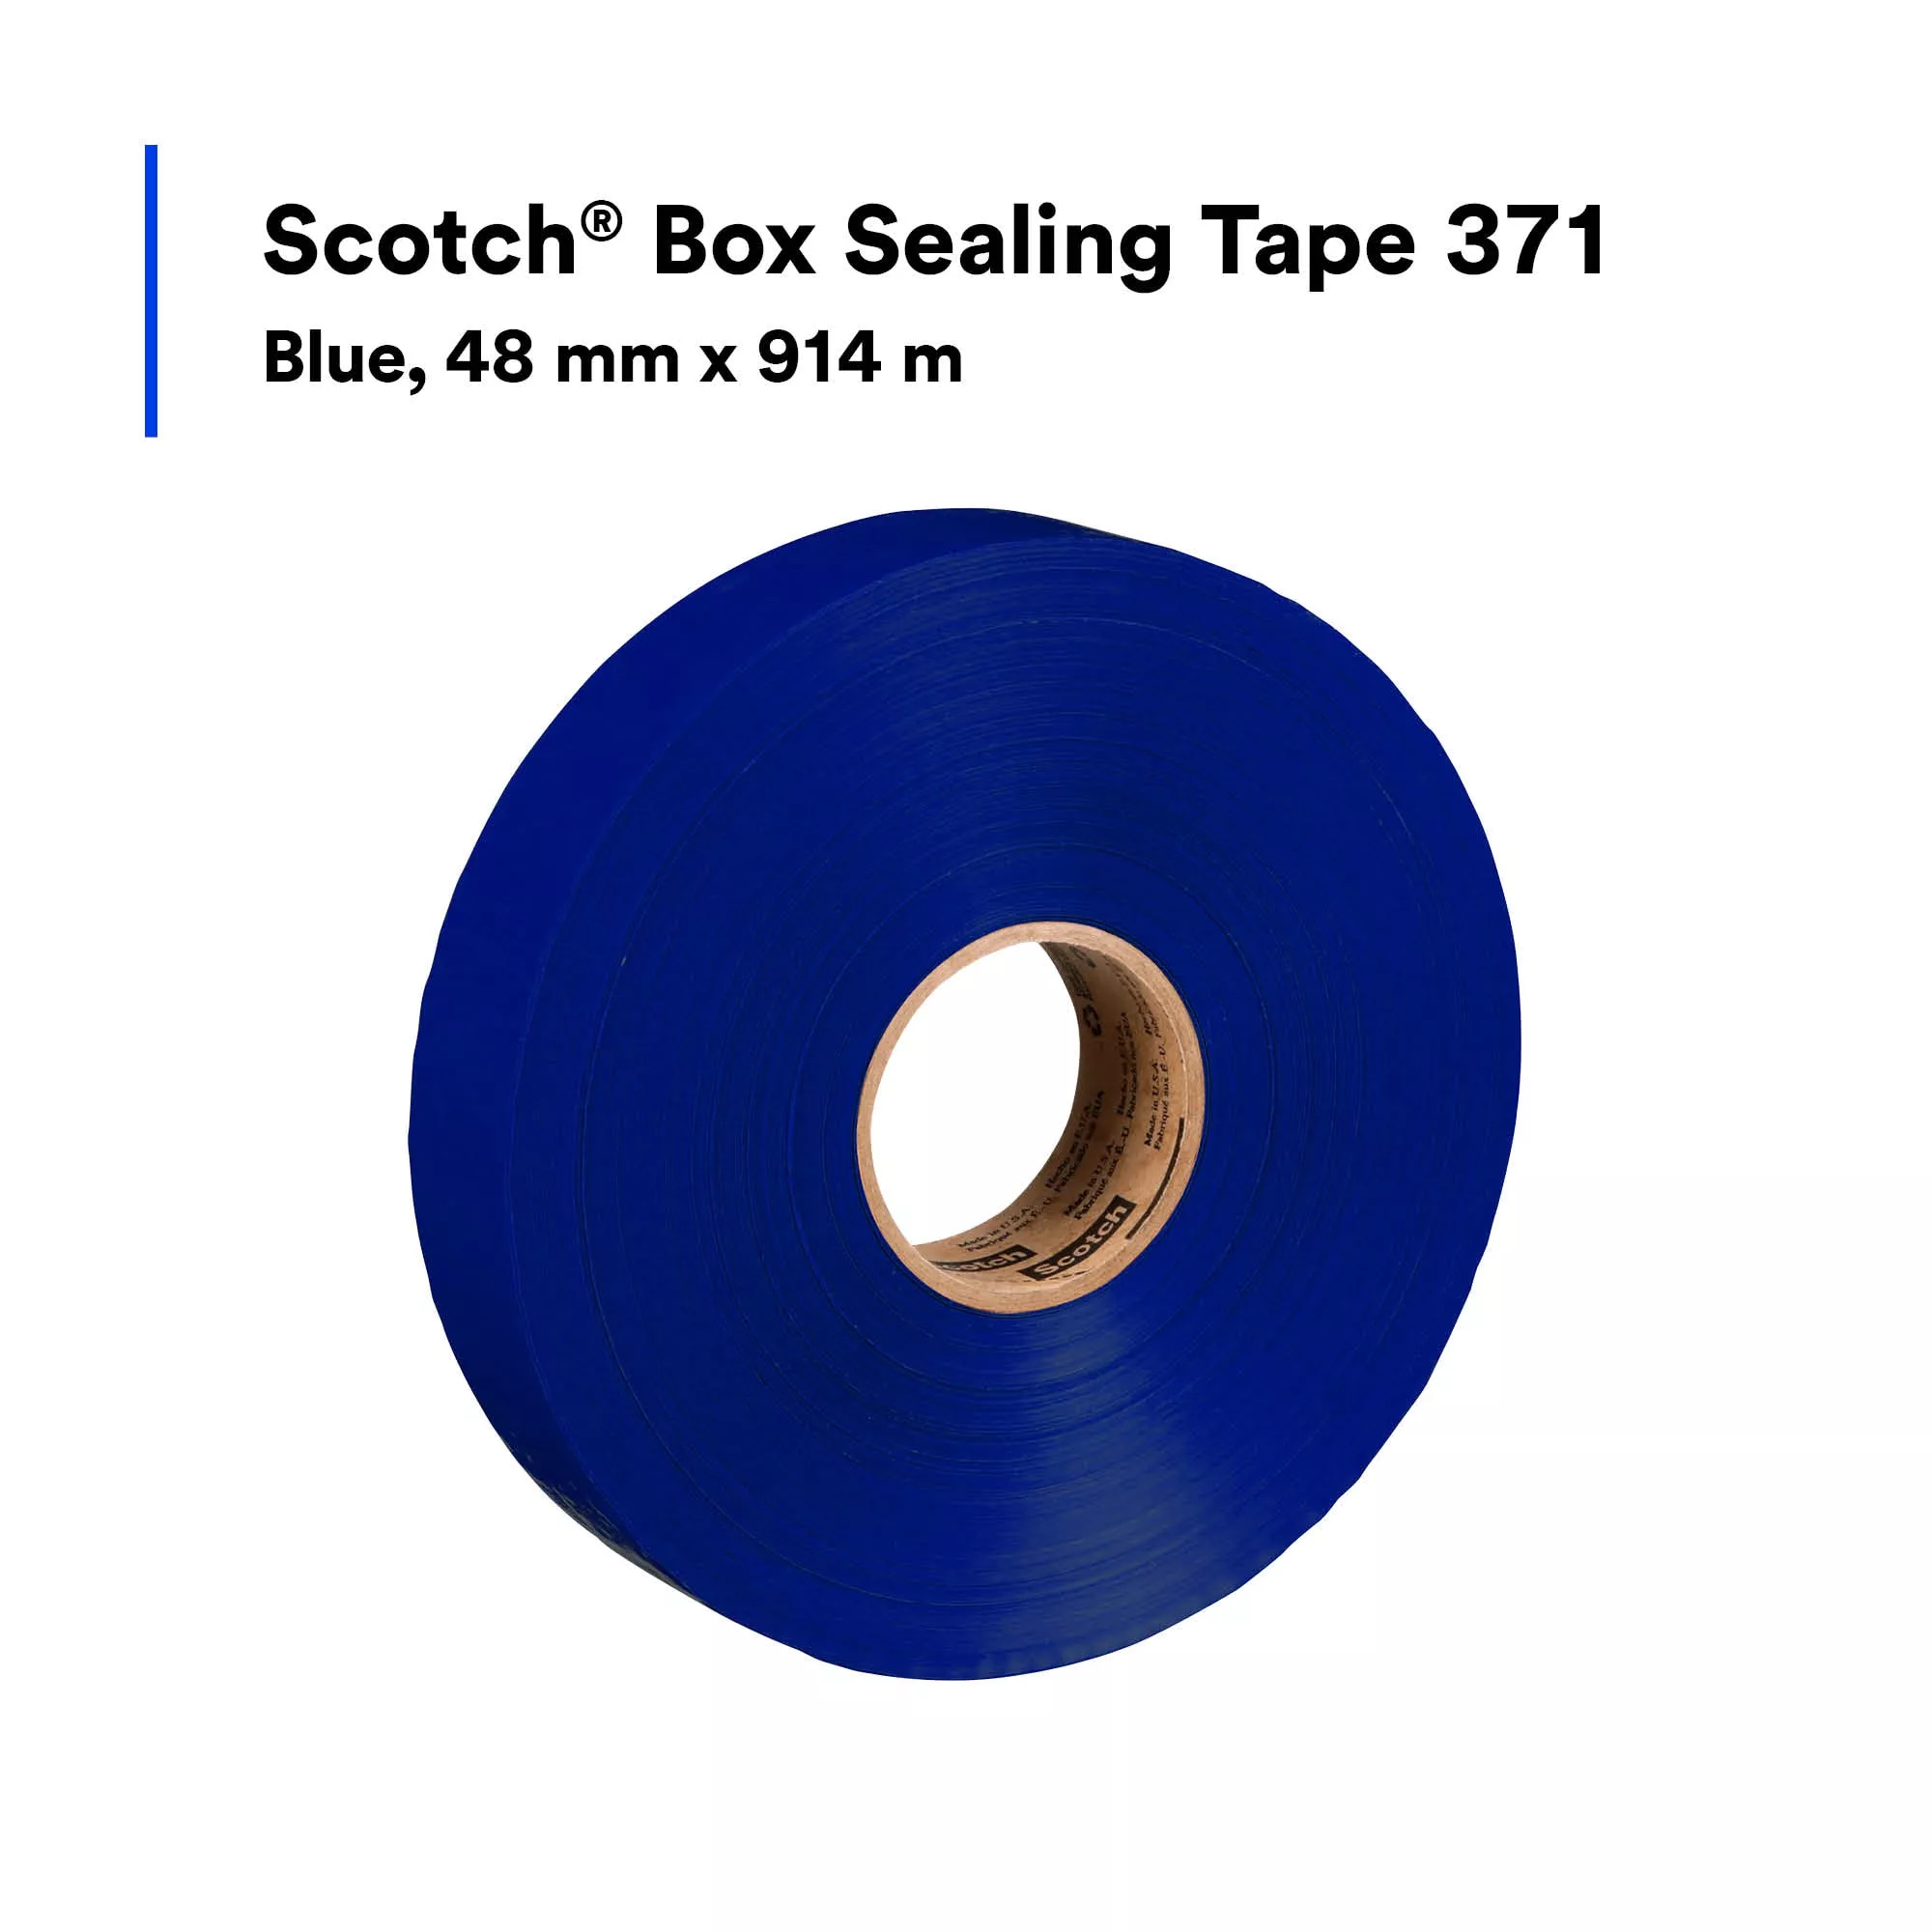 SKU 7100053230 | Scotch® Box Sealing Tape 371